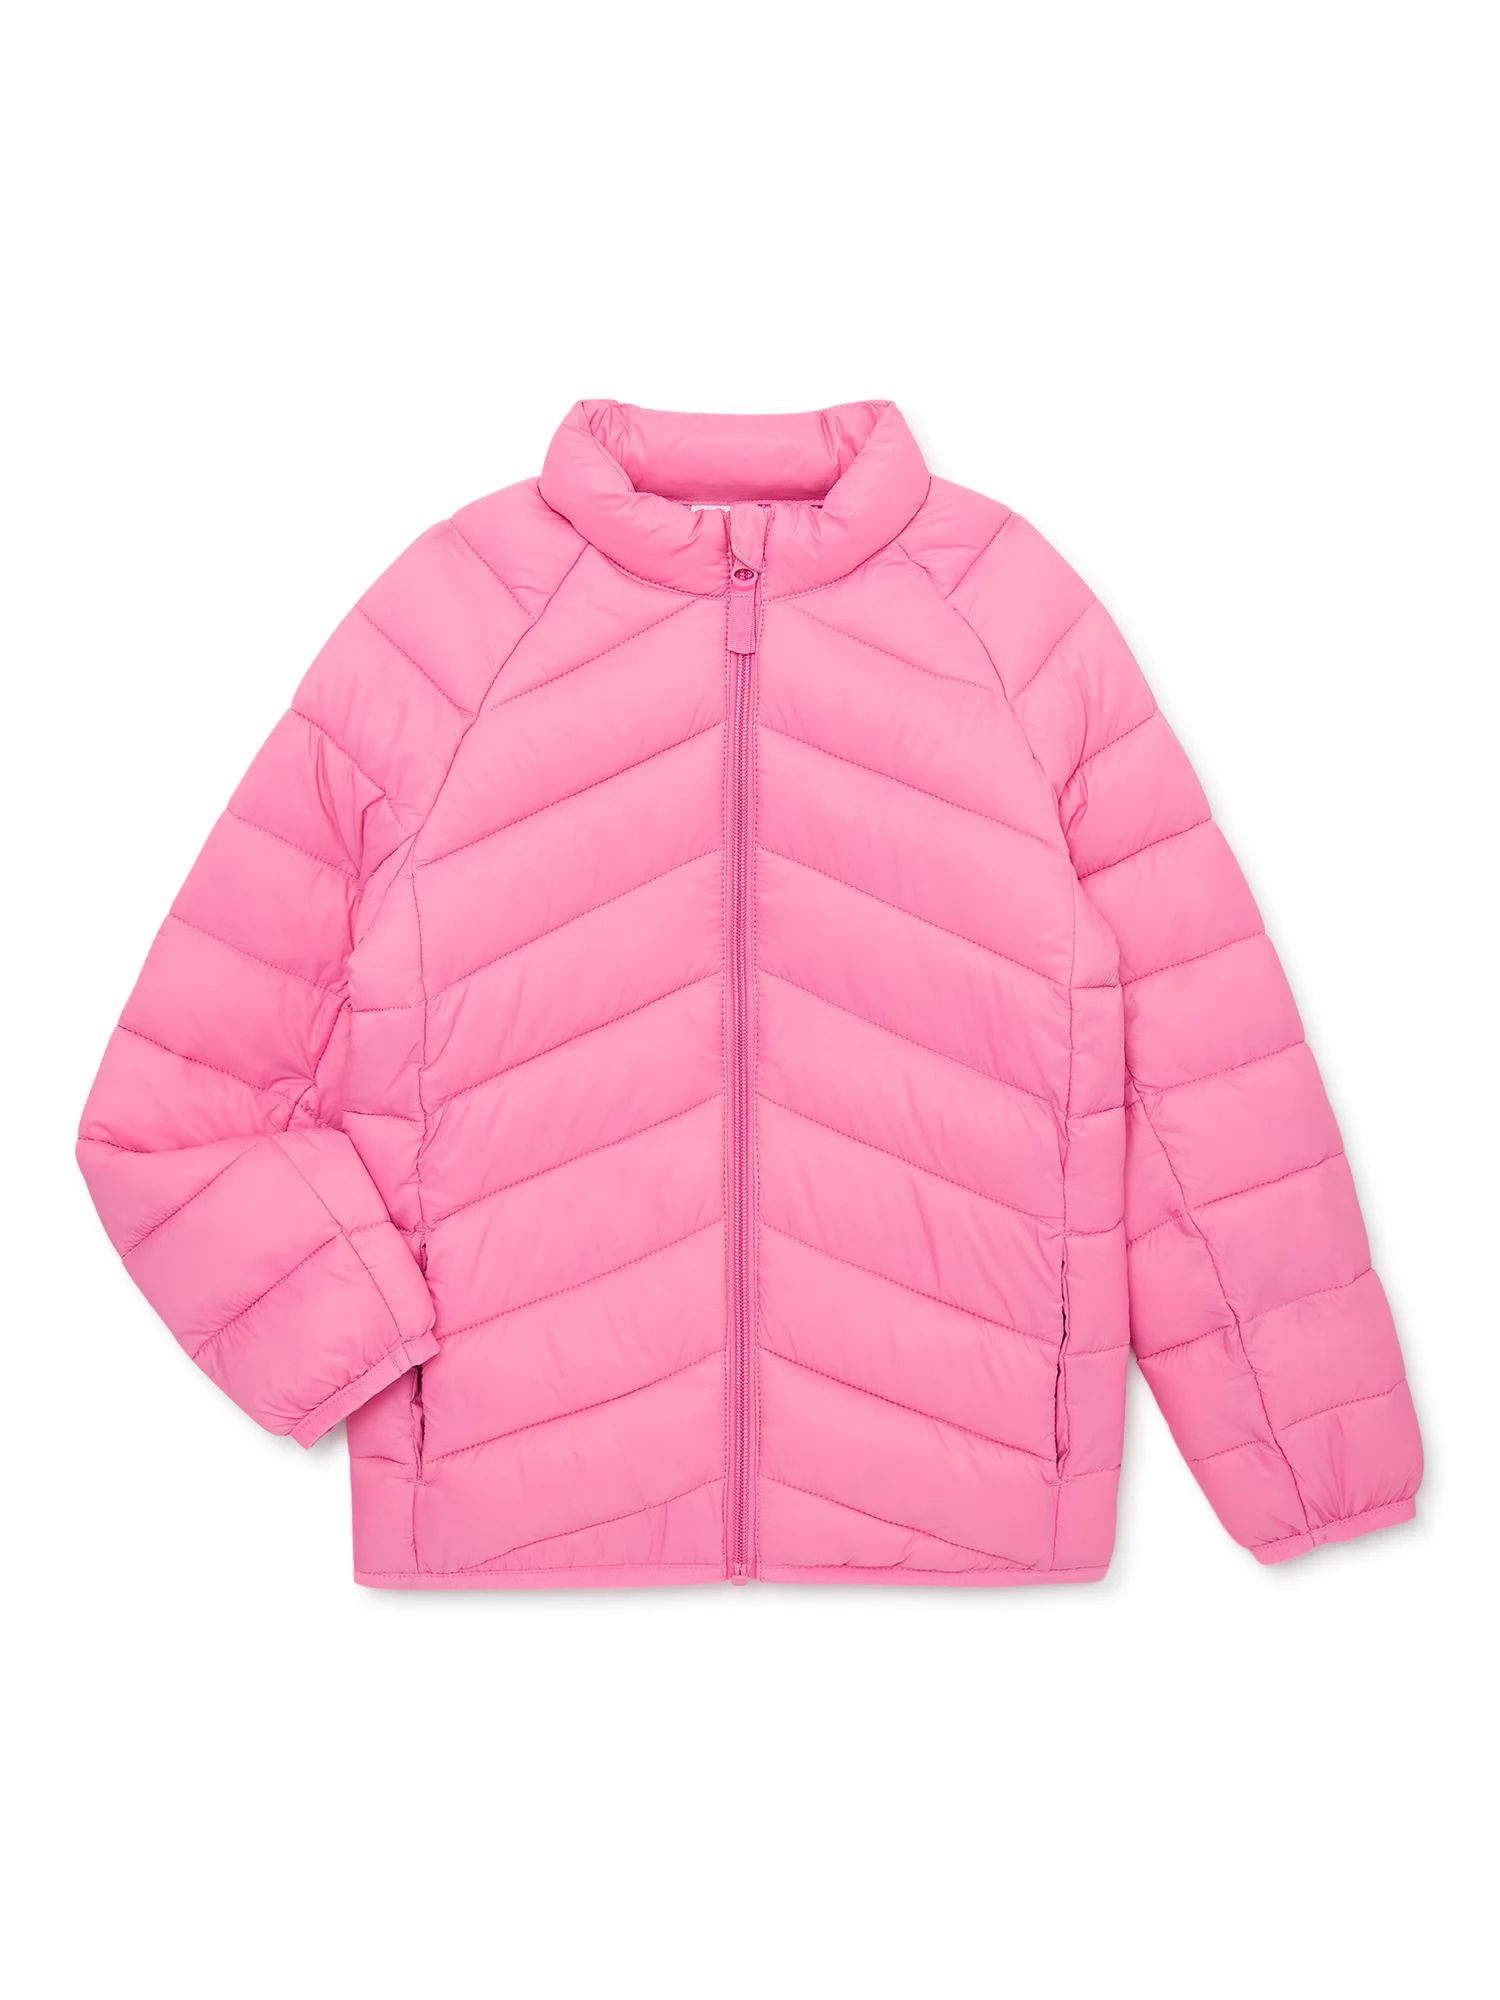 Wonder Nation Girls Lightweight Packable Puffer Jacket, Sizes 4-18 & Plus - Walmart.com | Walmart (US)